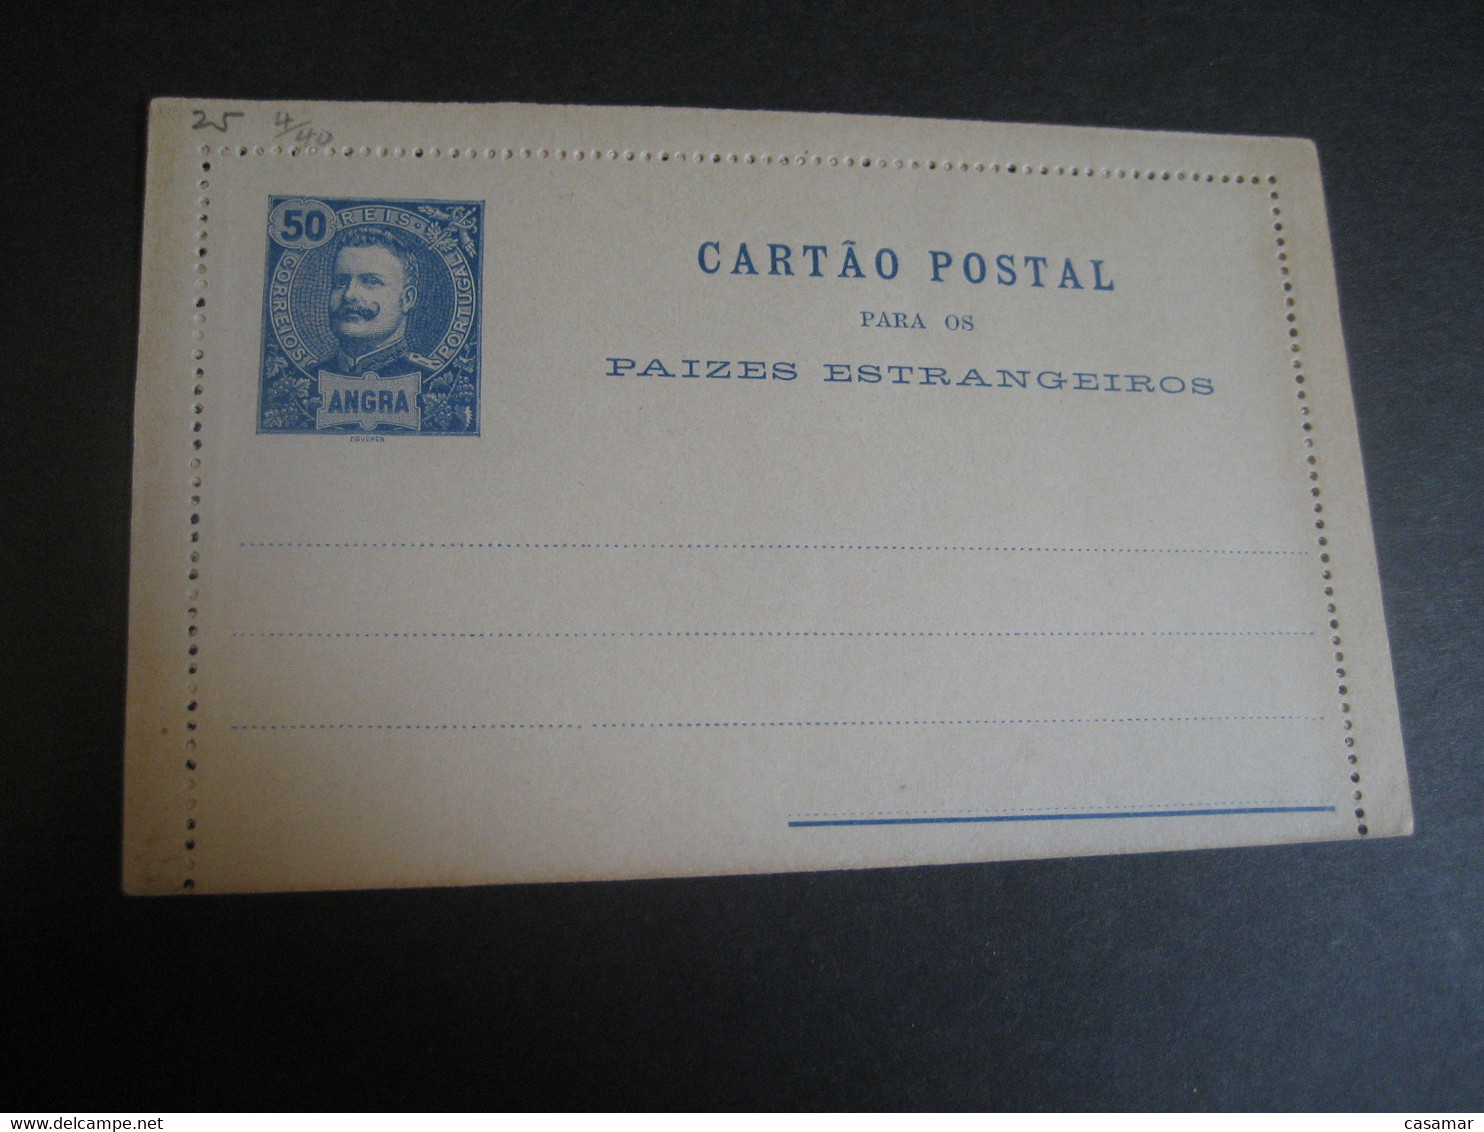 ANGRA 50 Reis Cartao Postal Stationery Card Terceira Azores Paizes Estrangeiros PORTUGAL Colonies - Angra